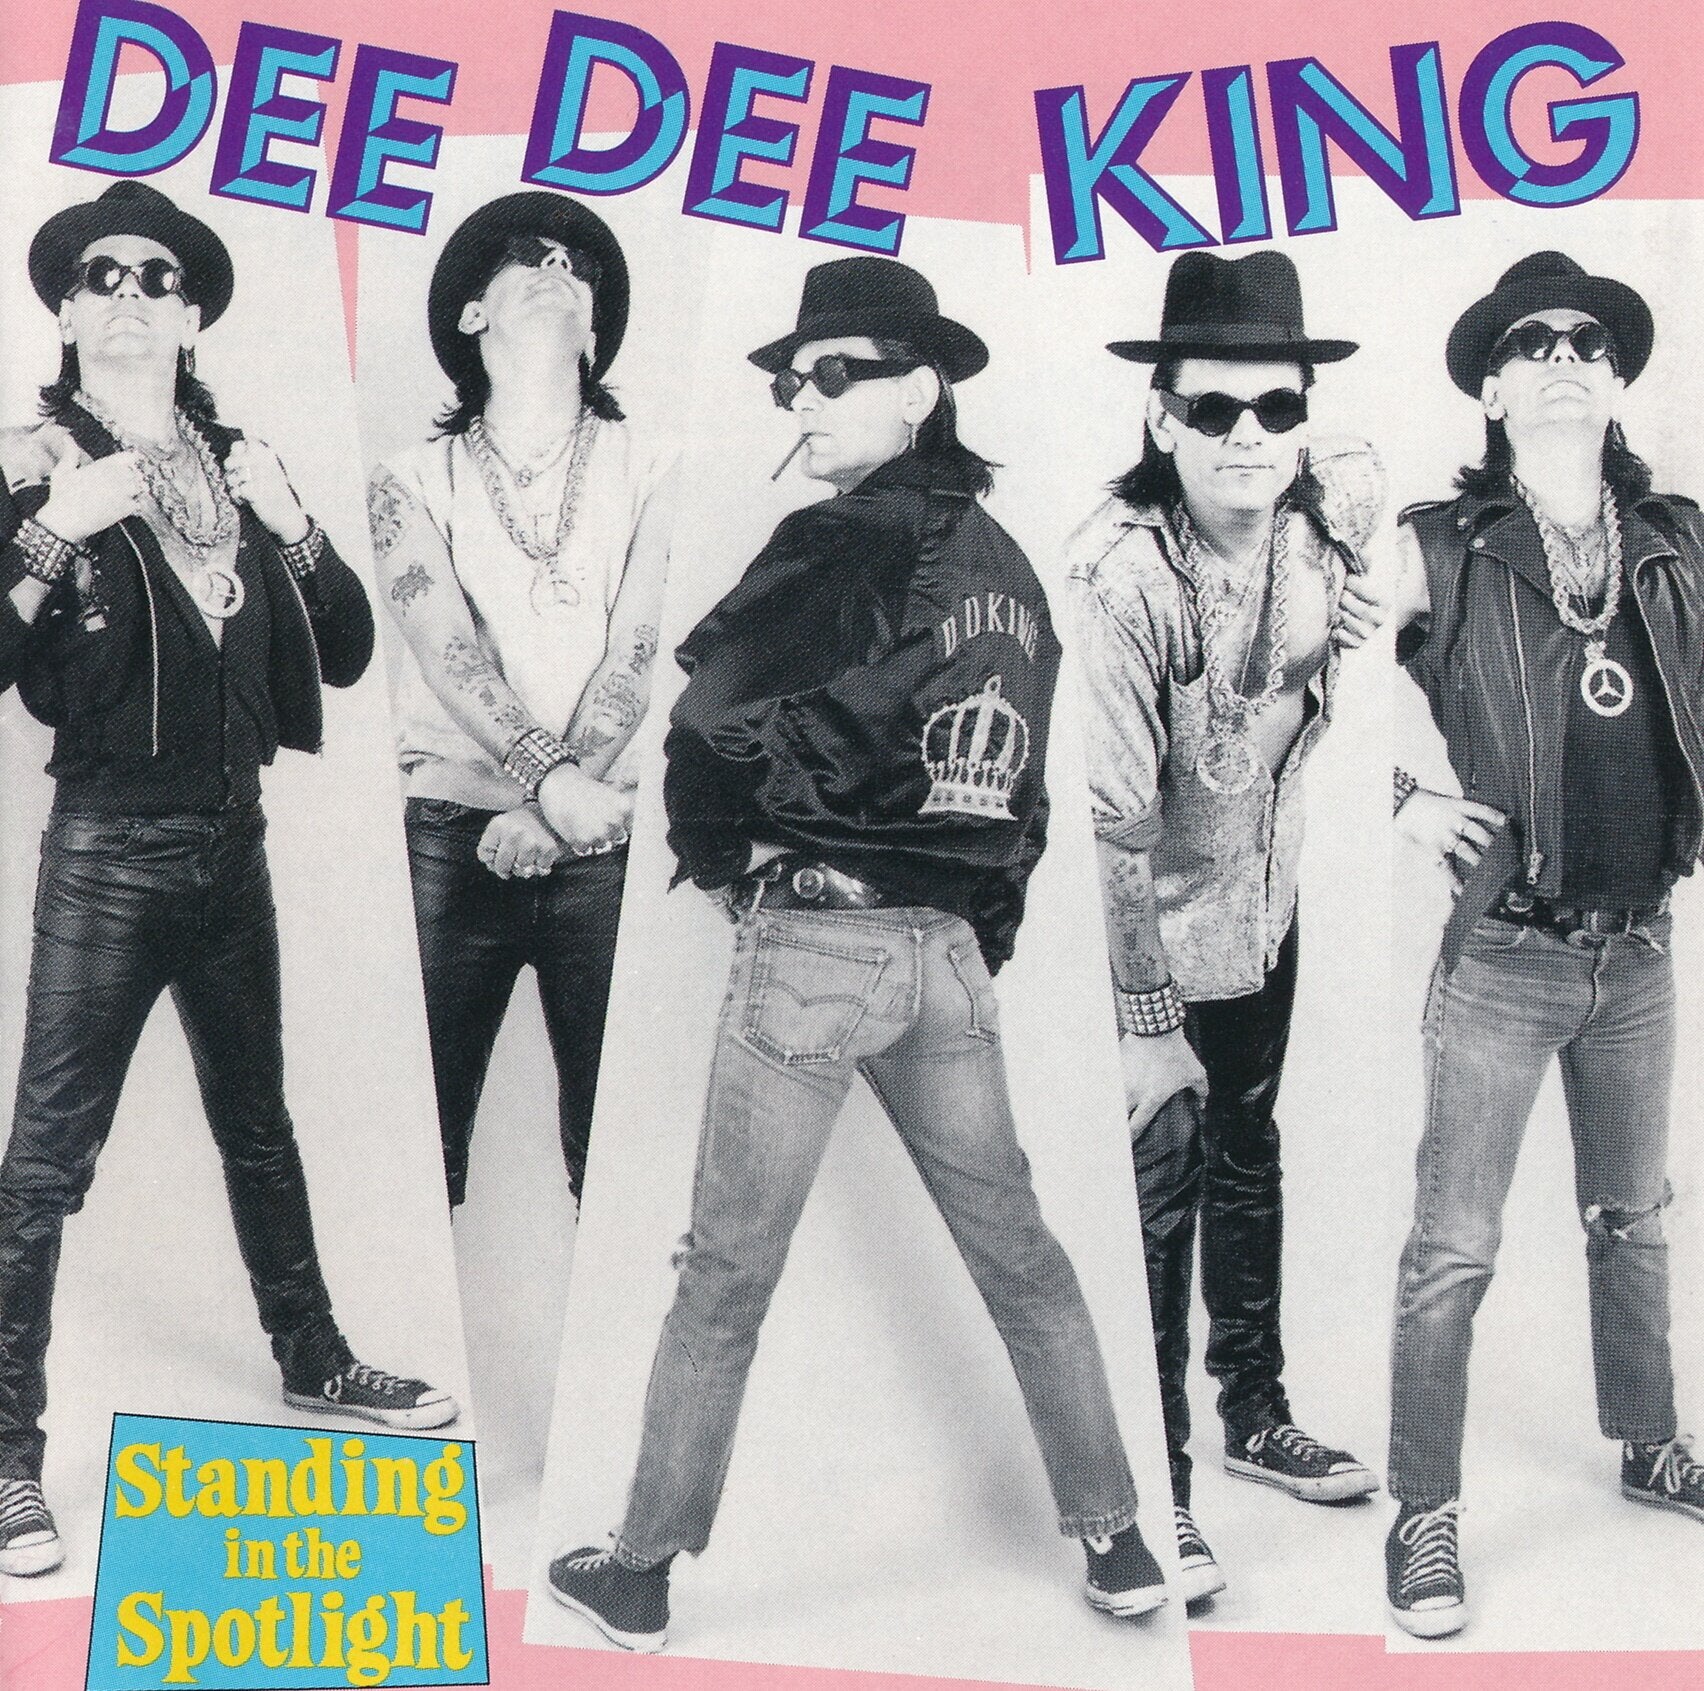 Dee Dee King (Ramones) "Standing in the Spotlight"